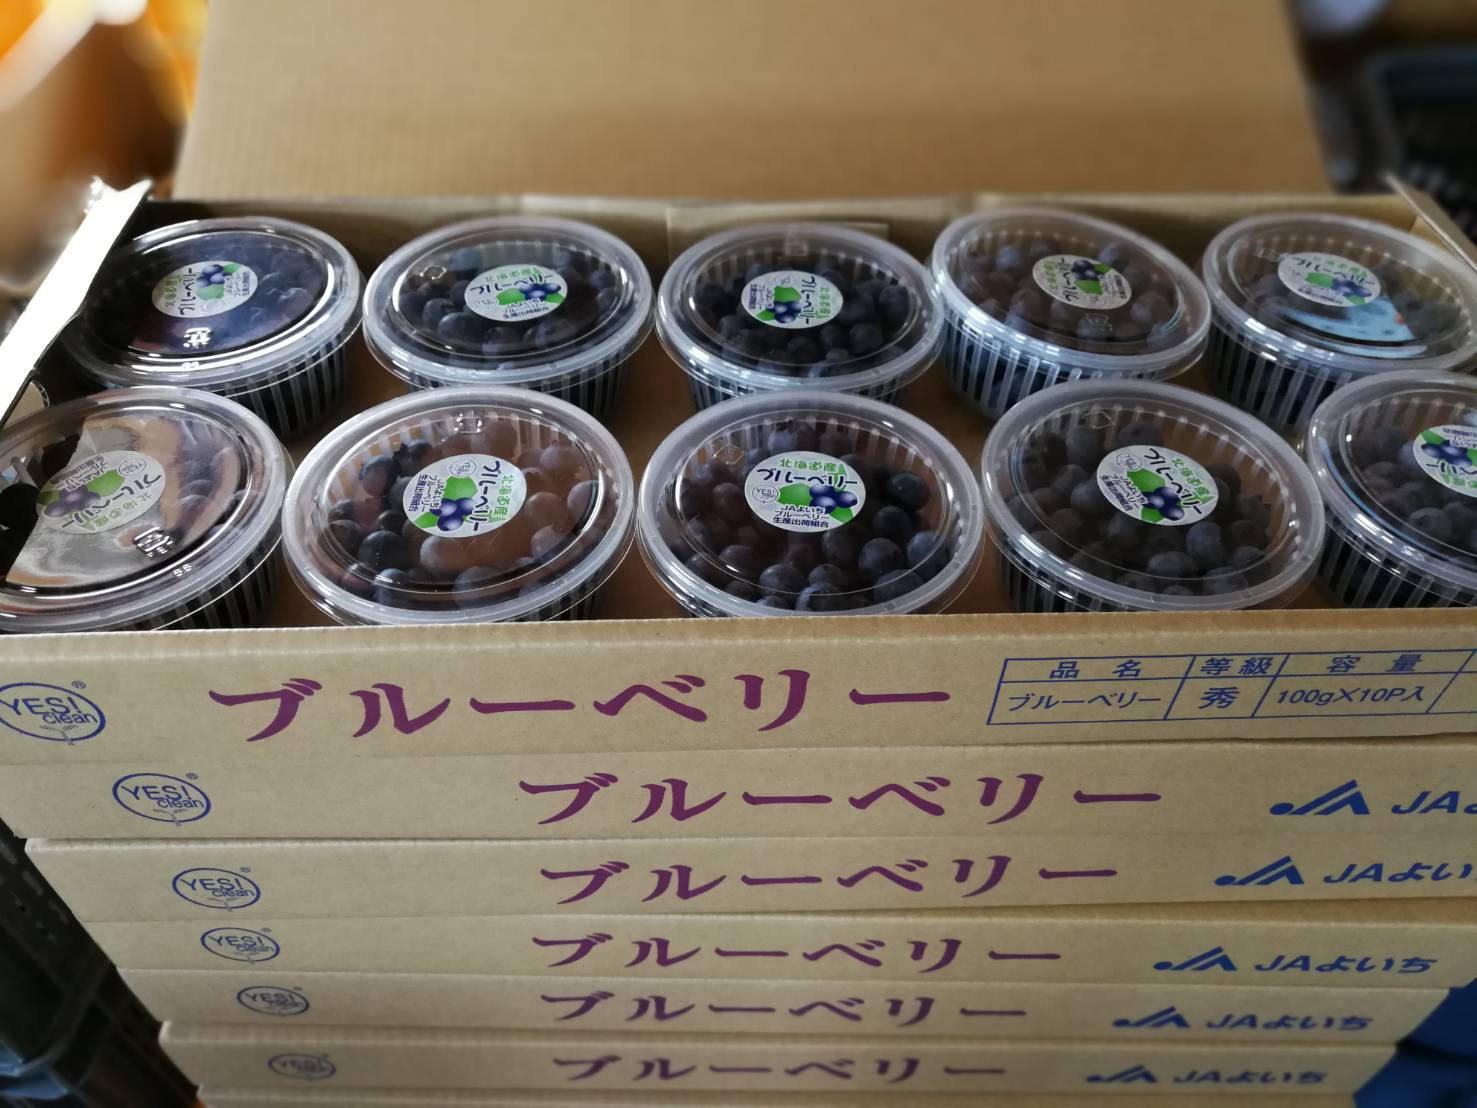 ブルーベリー収穫 出荷中 北海道余市からの直送販売も 砂川果樹園ブログ